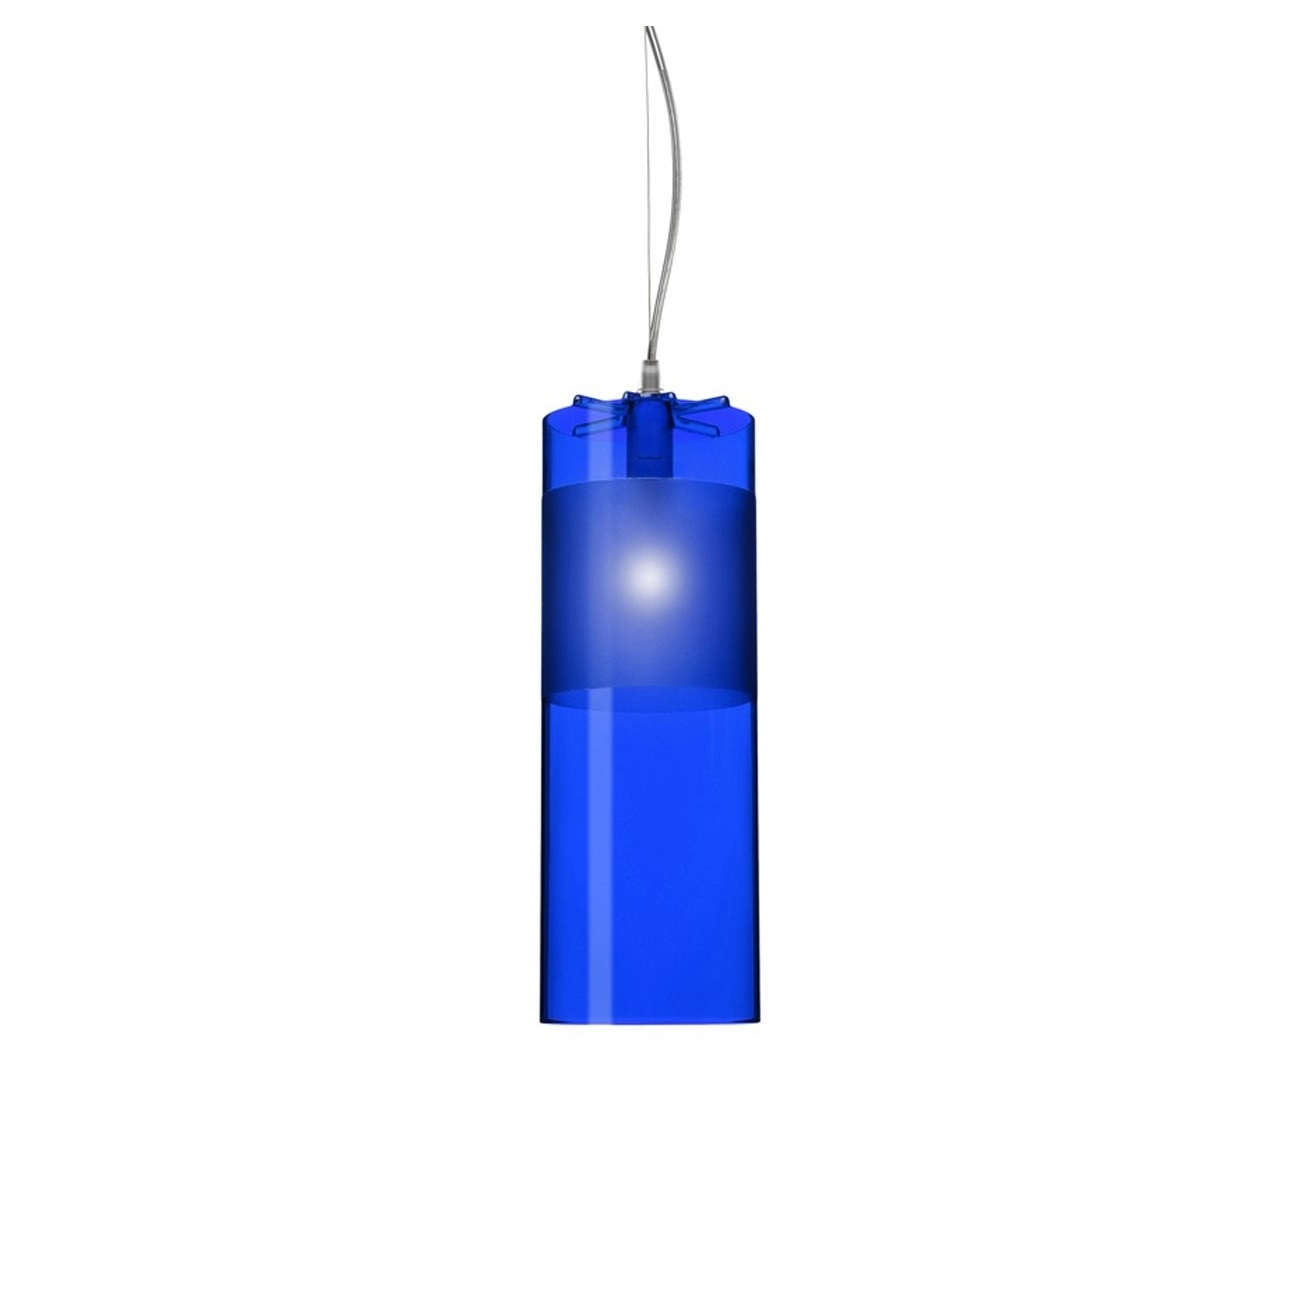 Výprodej Kartell designová závěsná svítidla Easy (modrá transparentní)